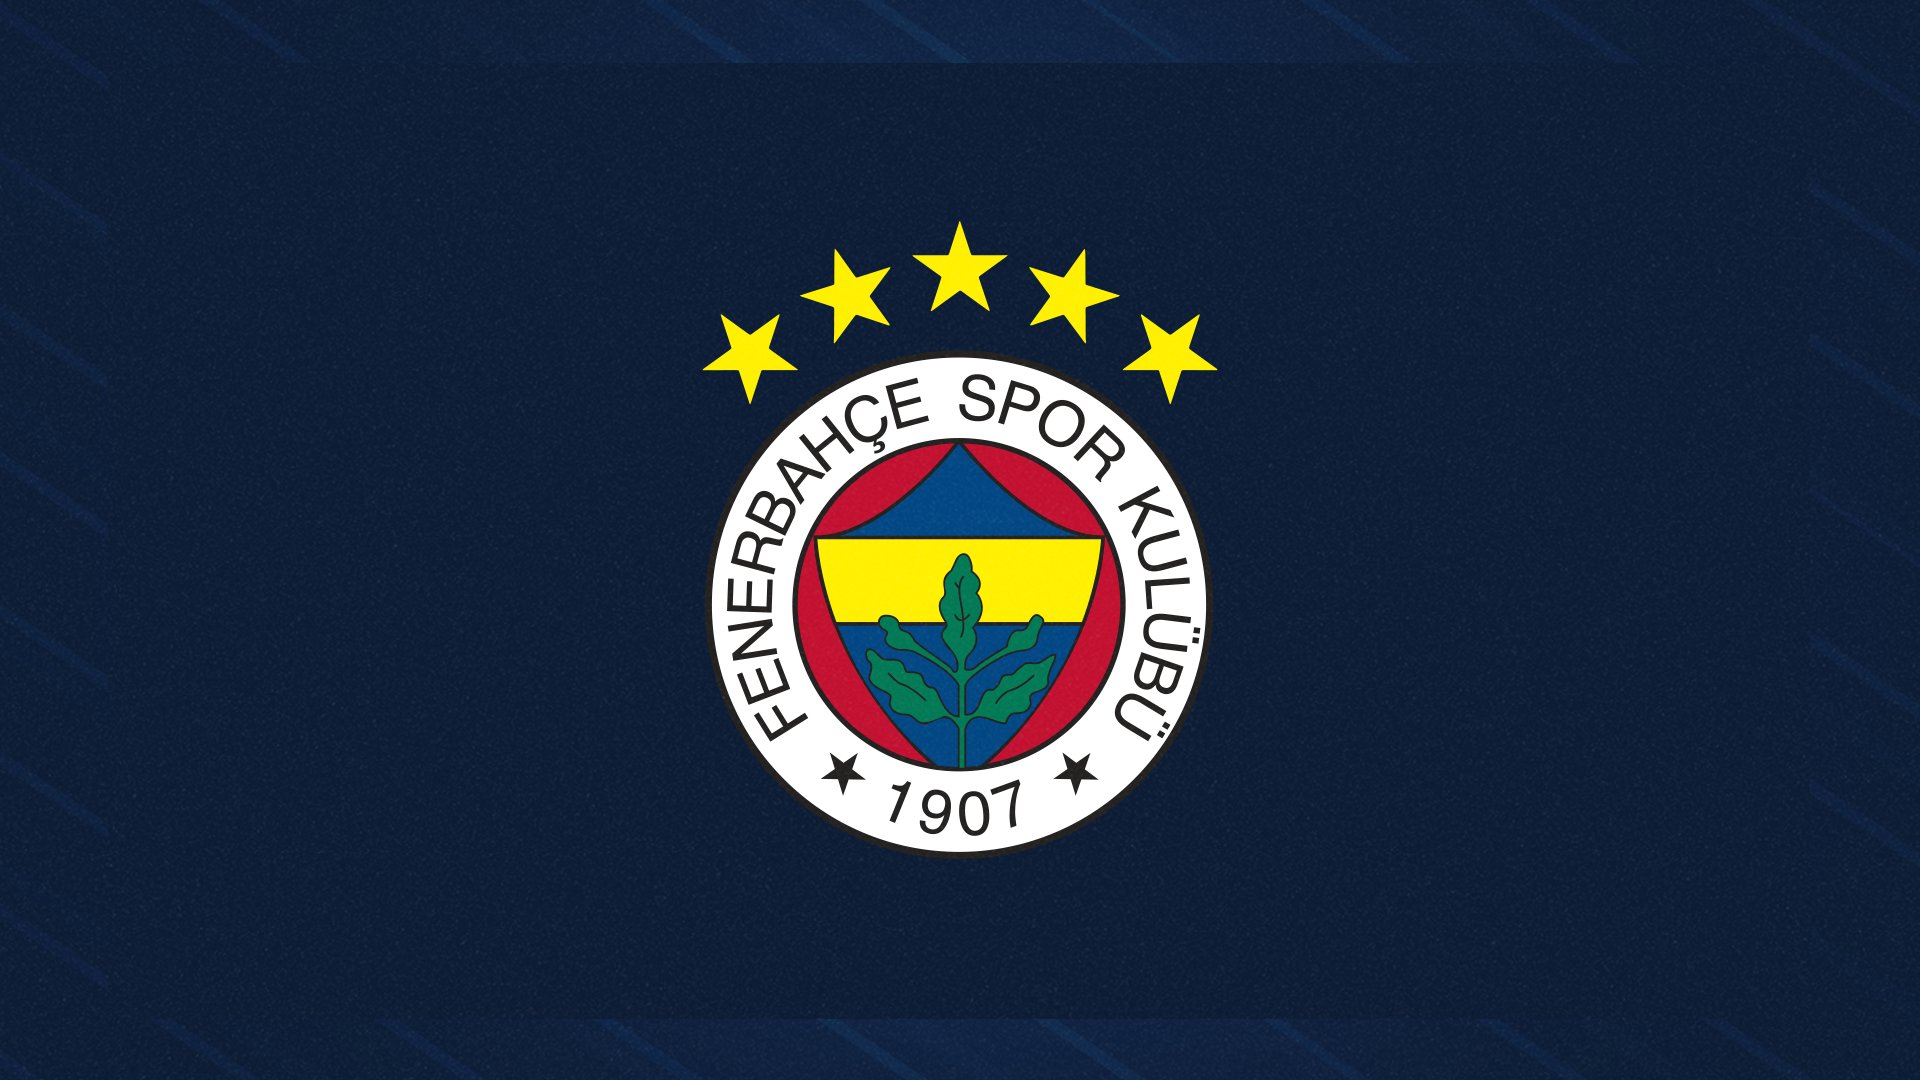 Fenerbahçe de kritik göreve Sedat Karabük getirildi